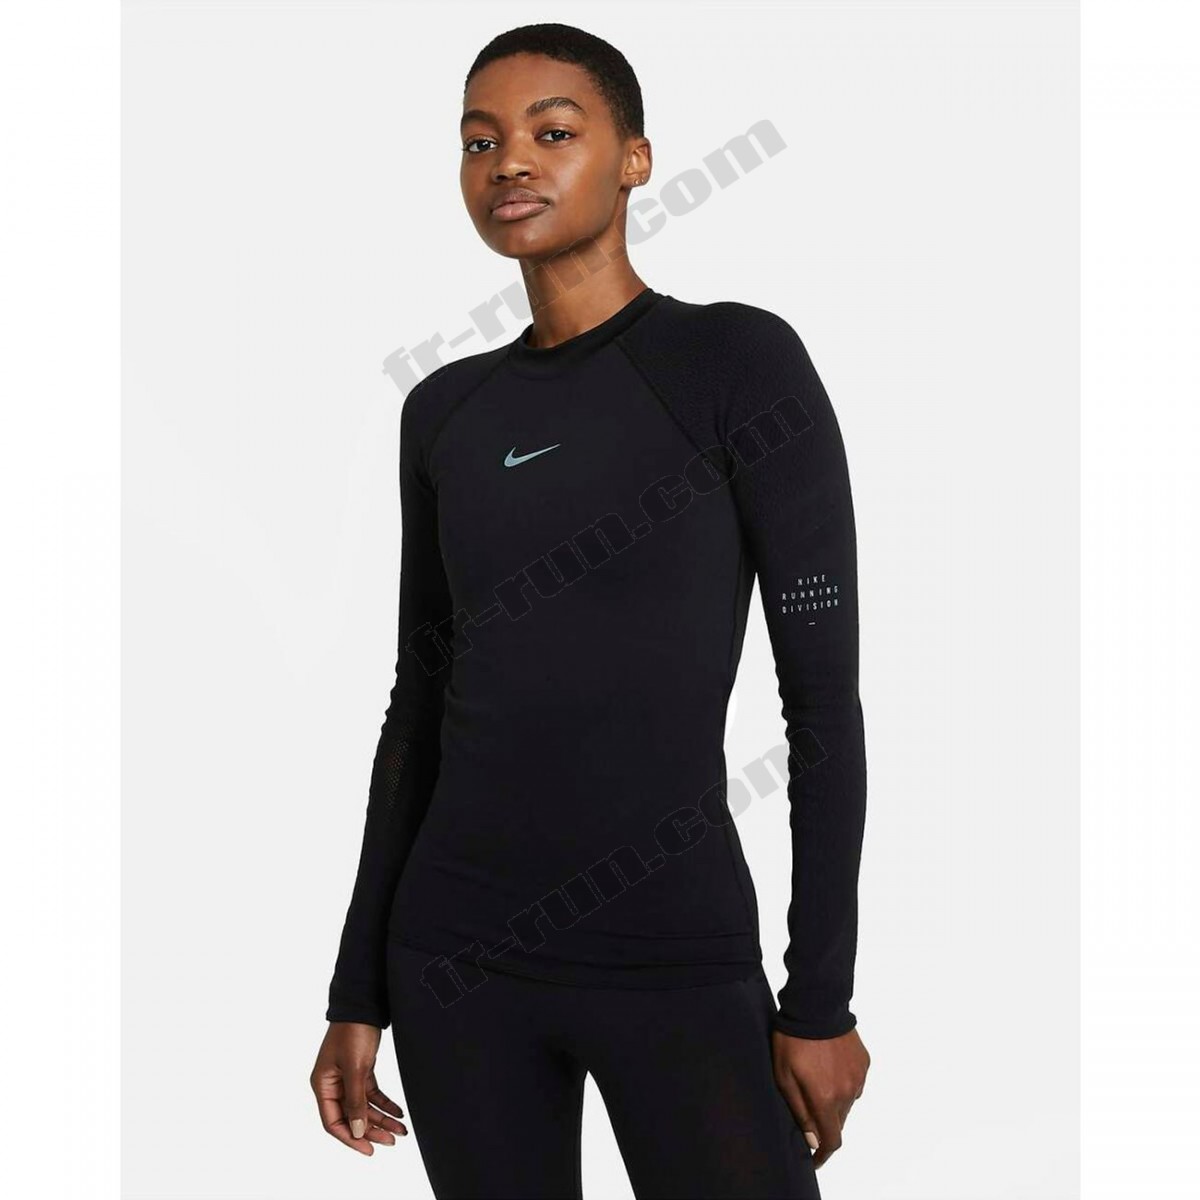 Nike/Course à pied femme NIKE T-shirt femme Nike Run Division √ Nouveau style √ Soldes - -0